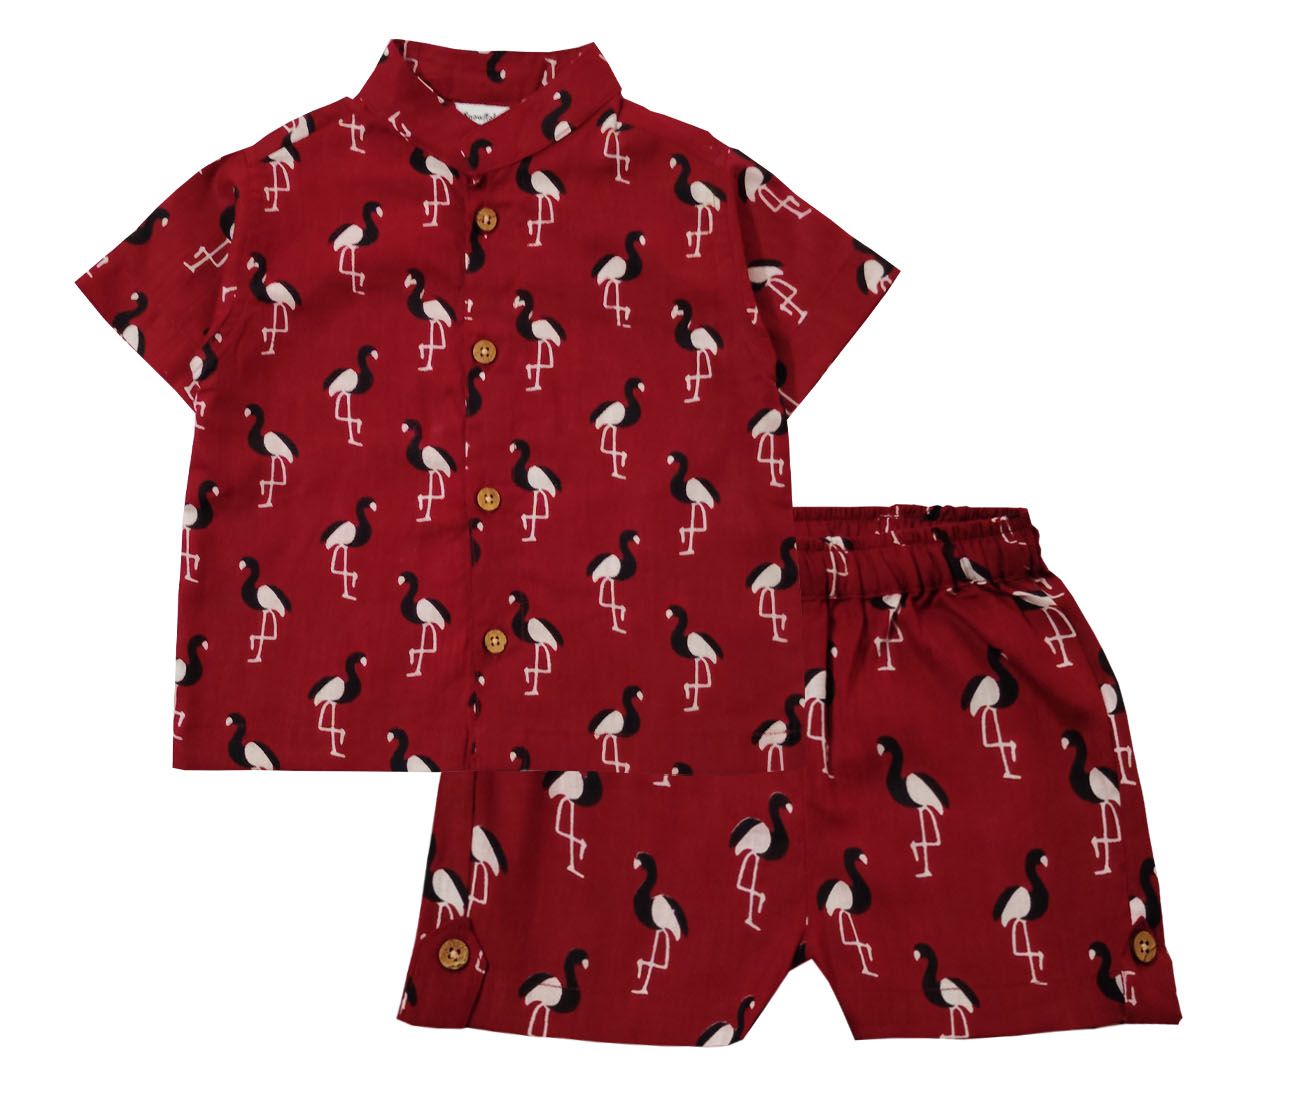 Snowflakes Unisex Cotton Co-Ord Set With Flamingo Prints - Maroon